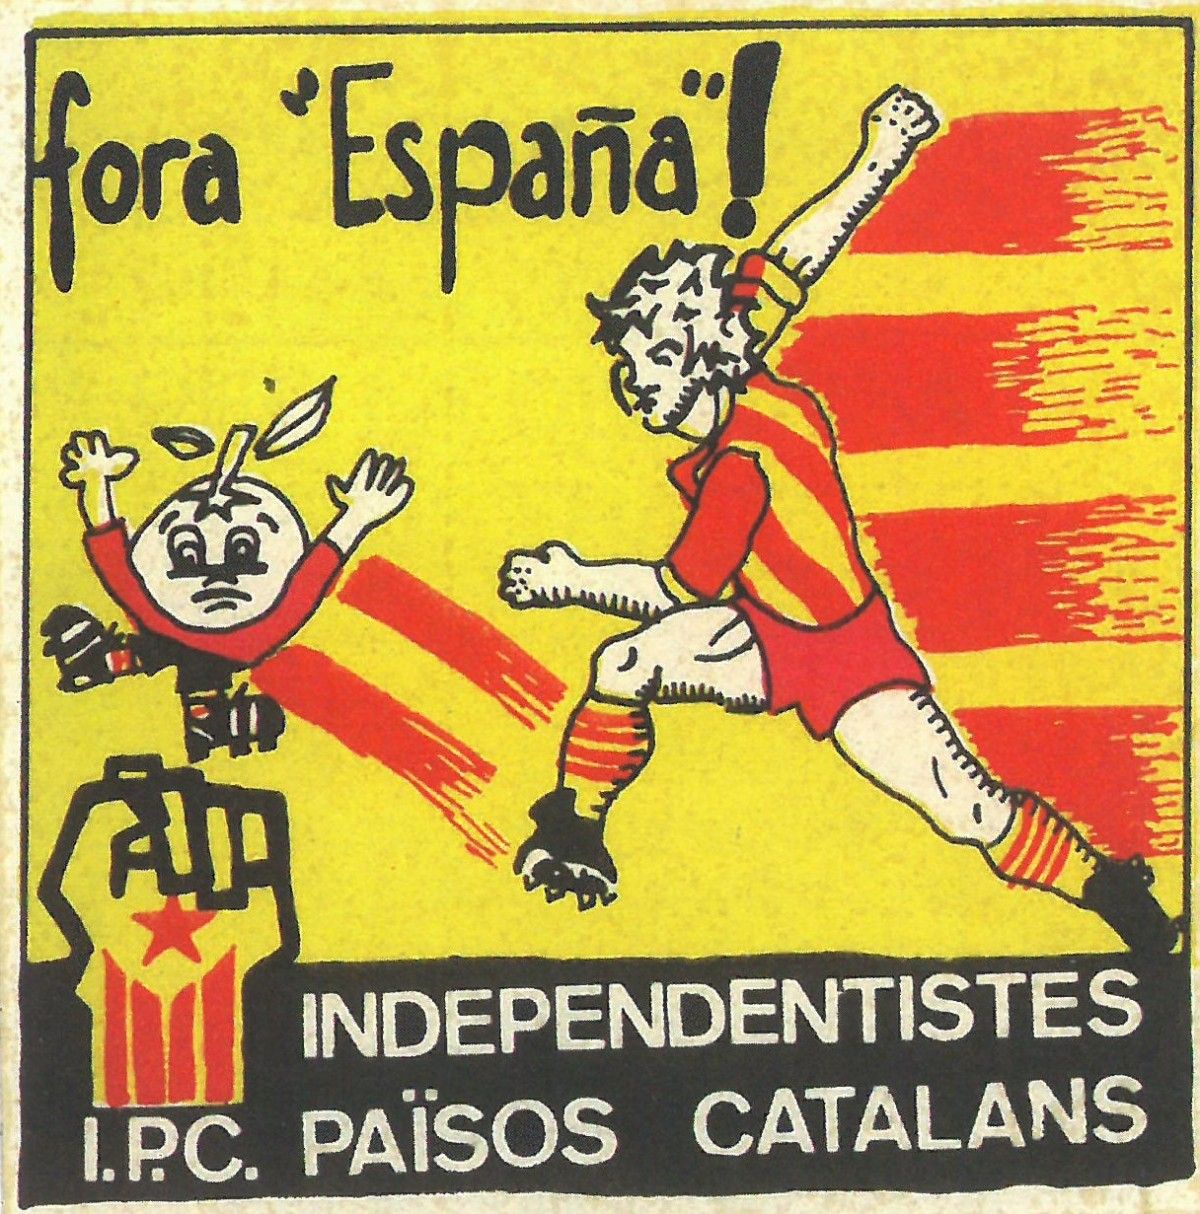 Adhesiu de l'organització independentista IPC contra el mundial d'Espanya 1982